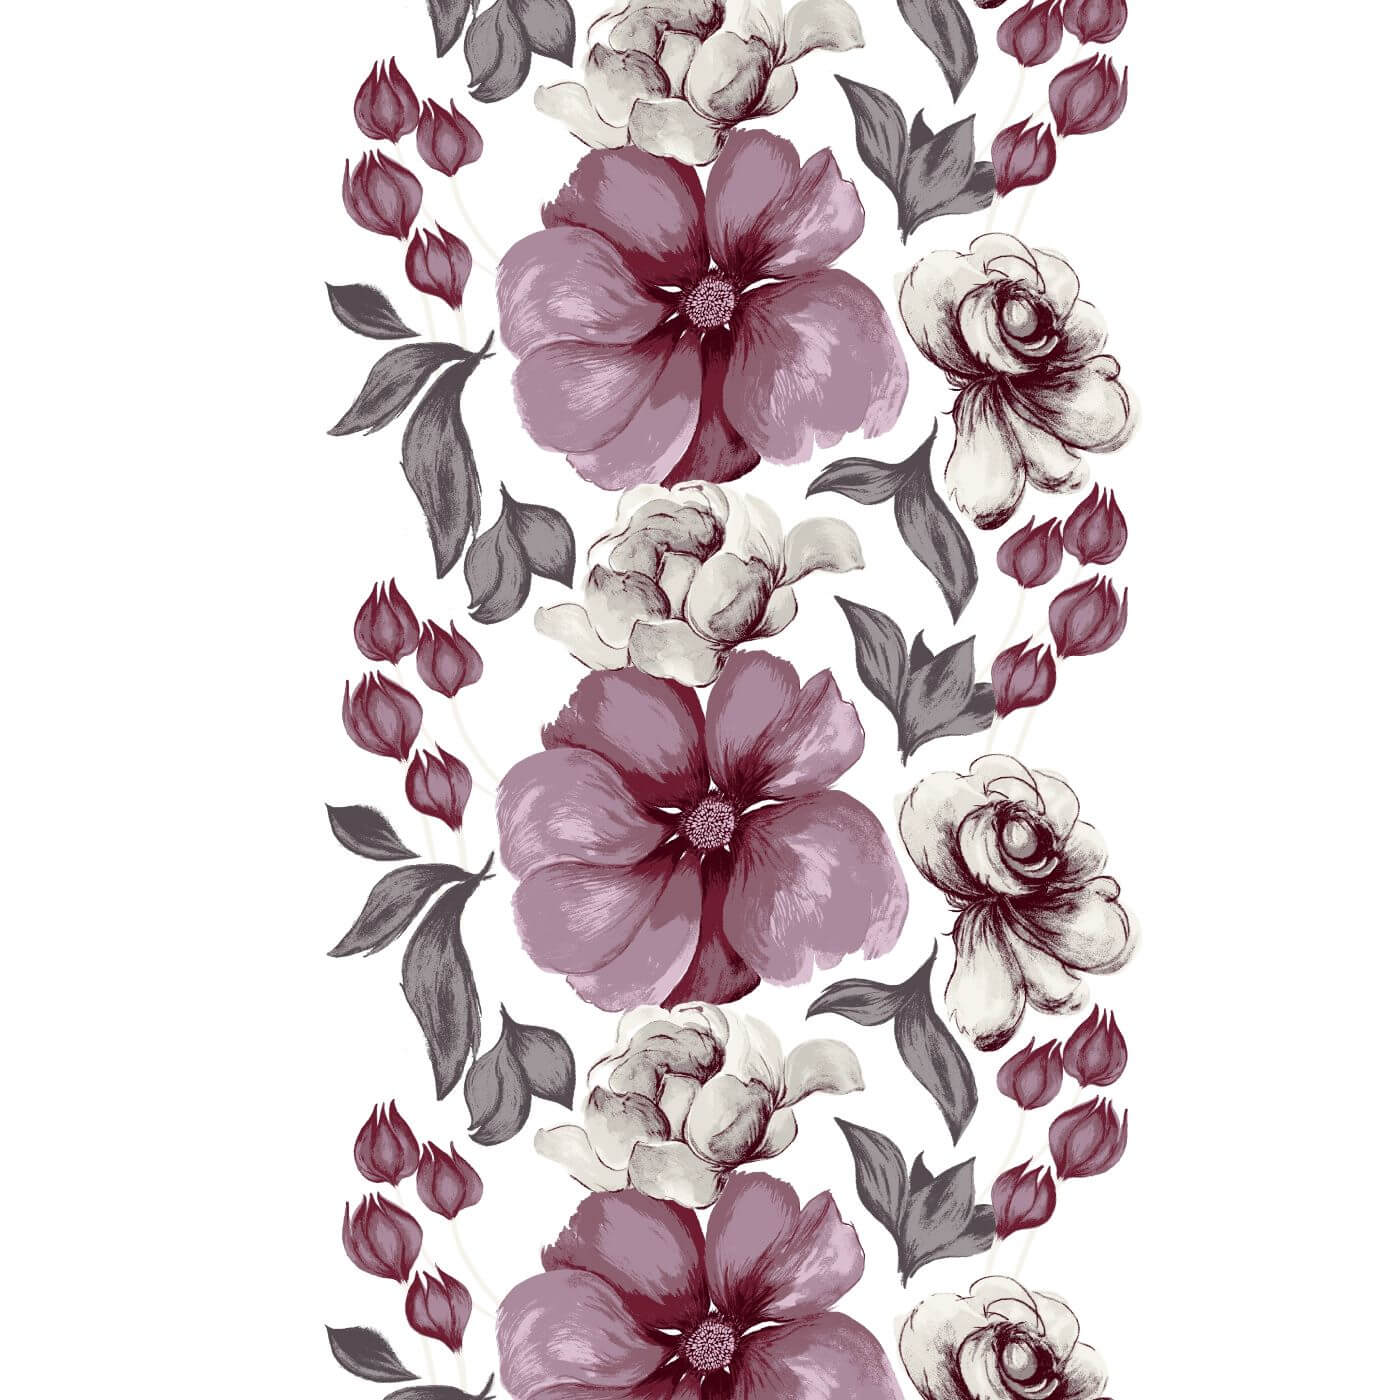 Zasłony w duże kwiaty ELEGIA. Wzór zasłony na taśmie 140×250 w duże fioletowe kwiaty na białym tyle. Widać też akcenty w kolorze szarym. Styl skandynawski